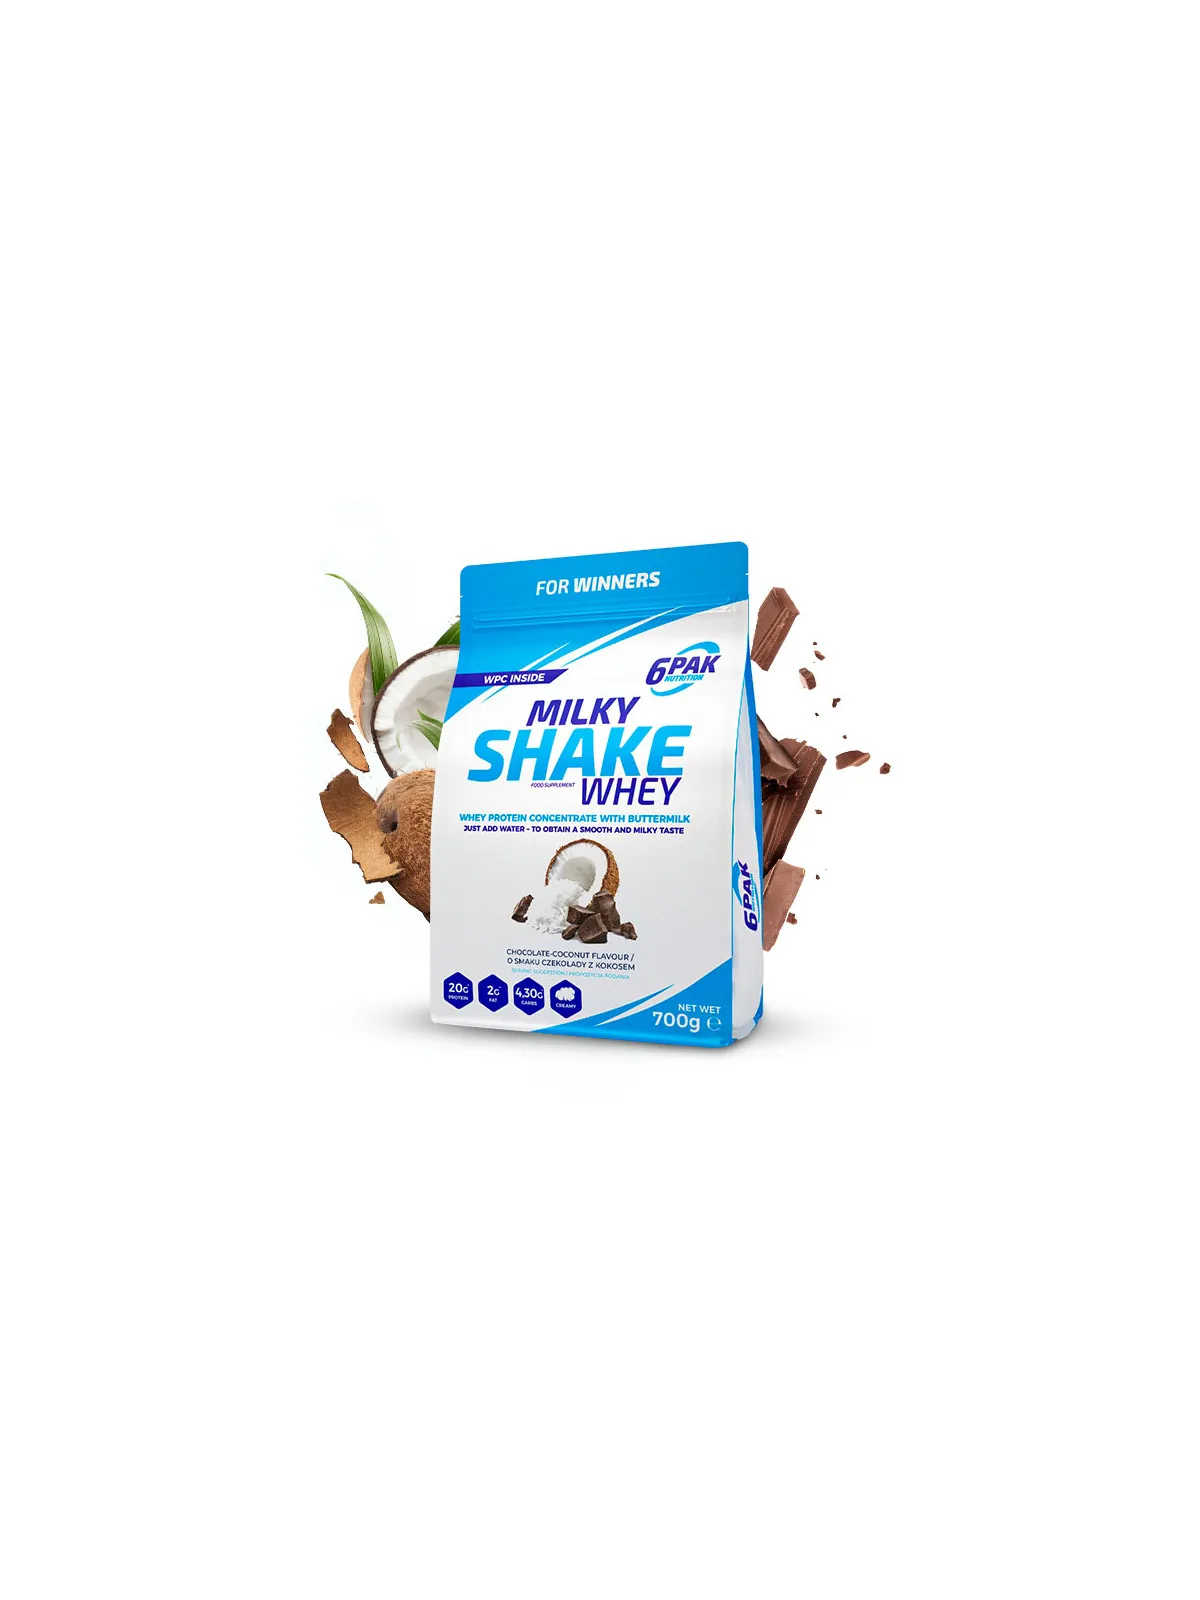 Milky Shake Whey - 700g